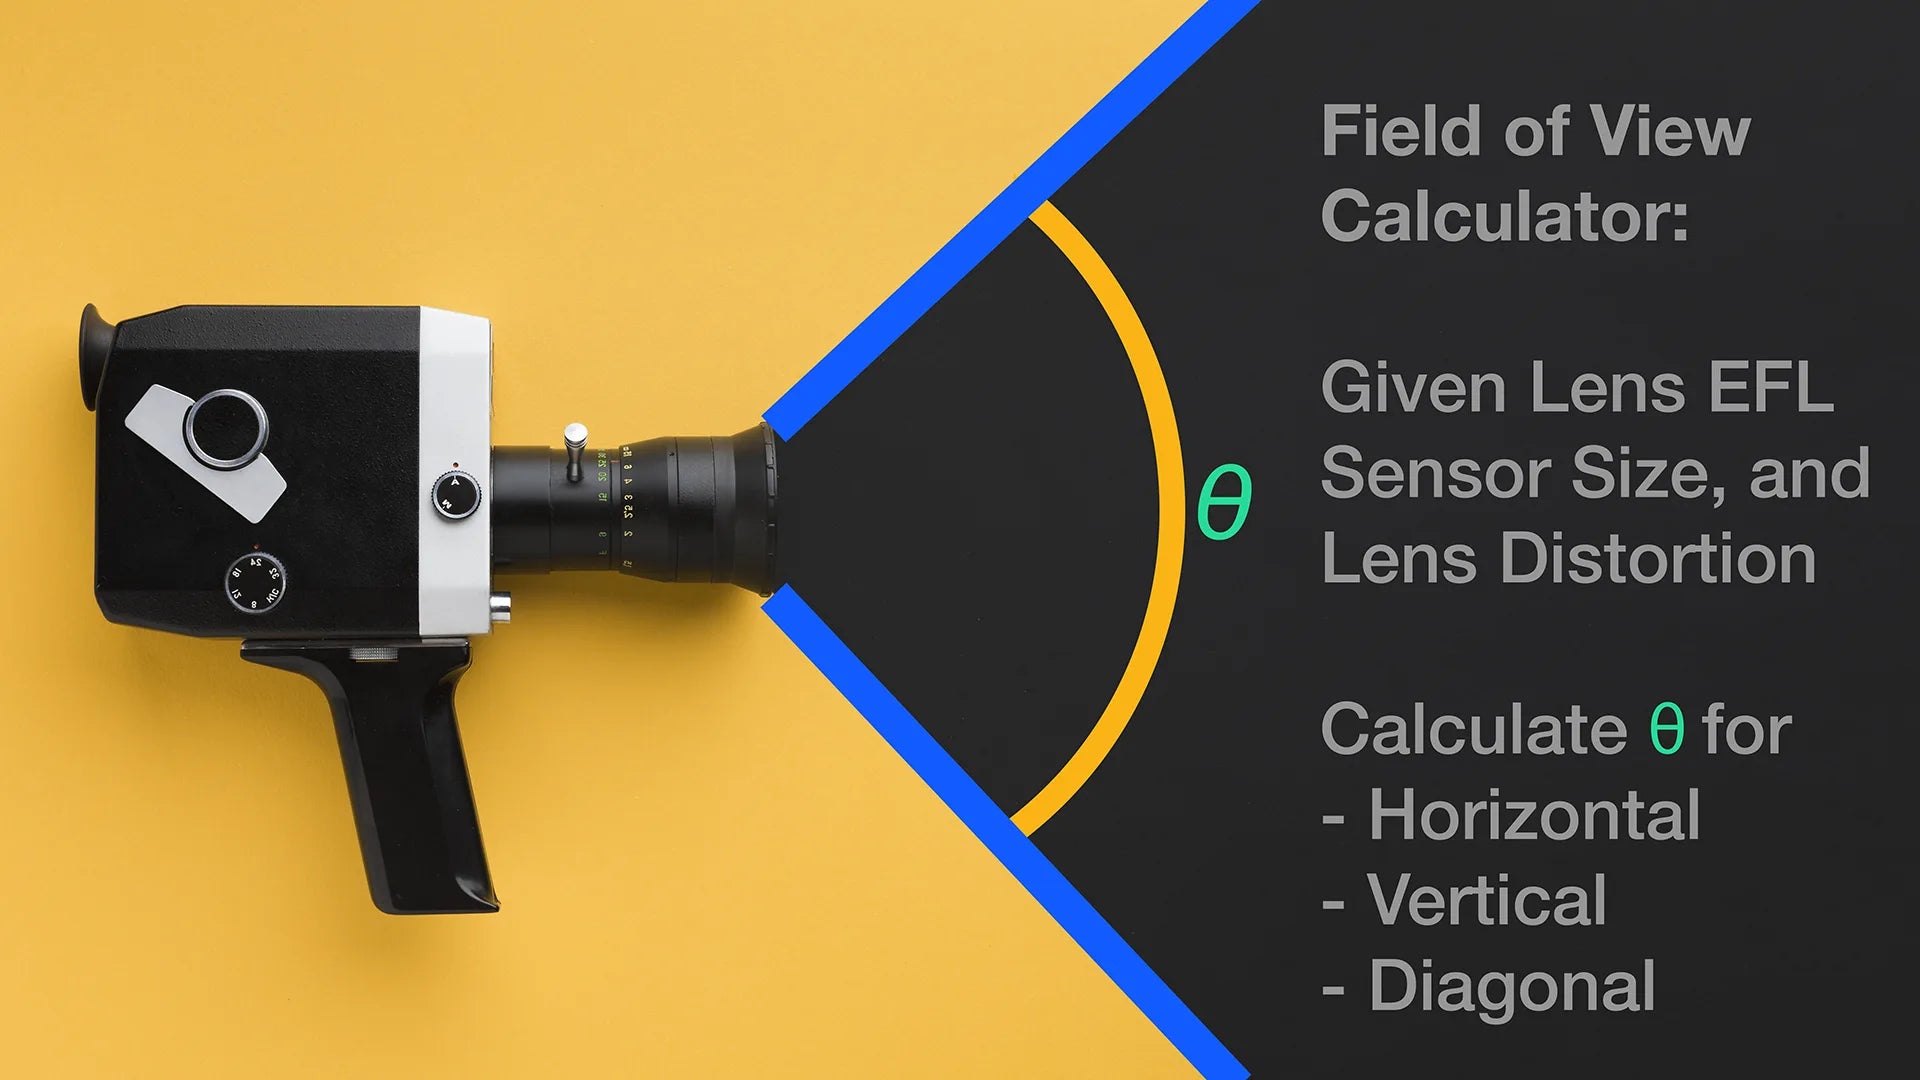 An FoV Calculator for Vision System Cameras